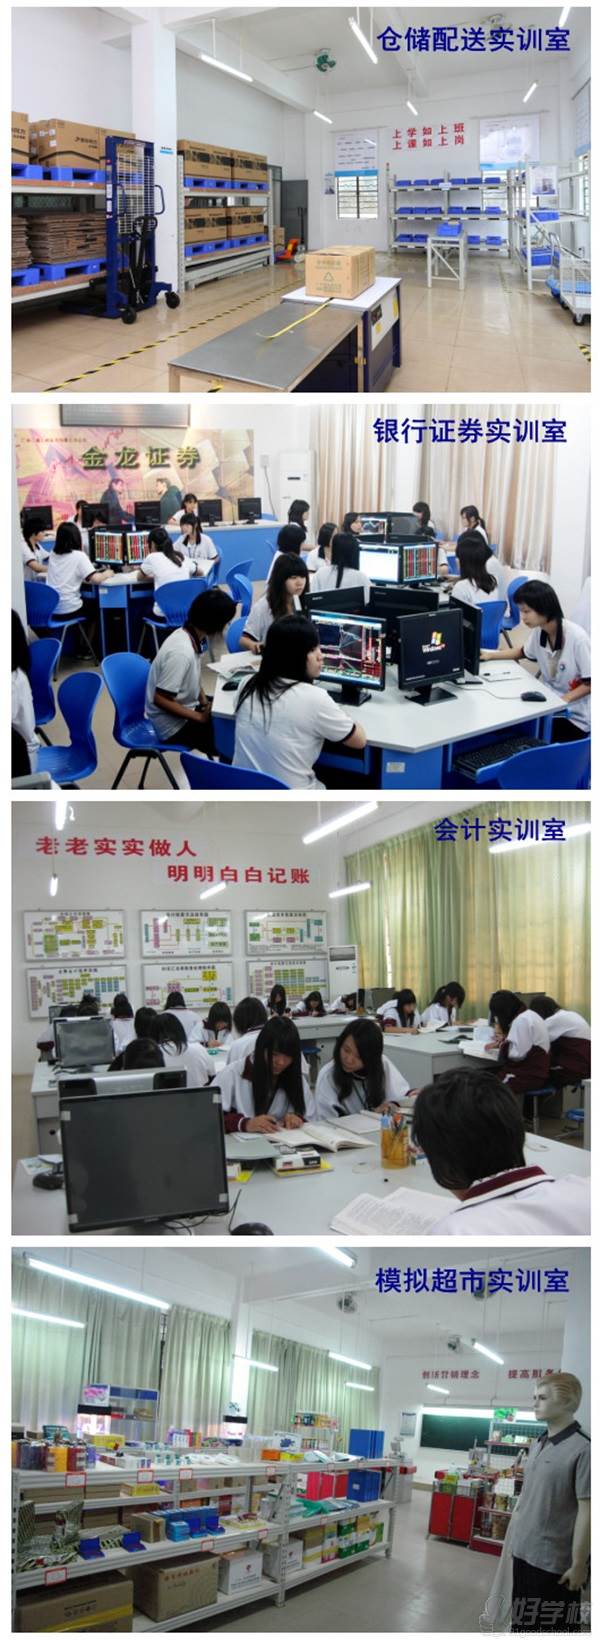 广州现代信息工程职业技术学院的实训室掠影